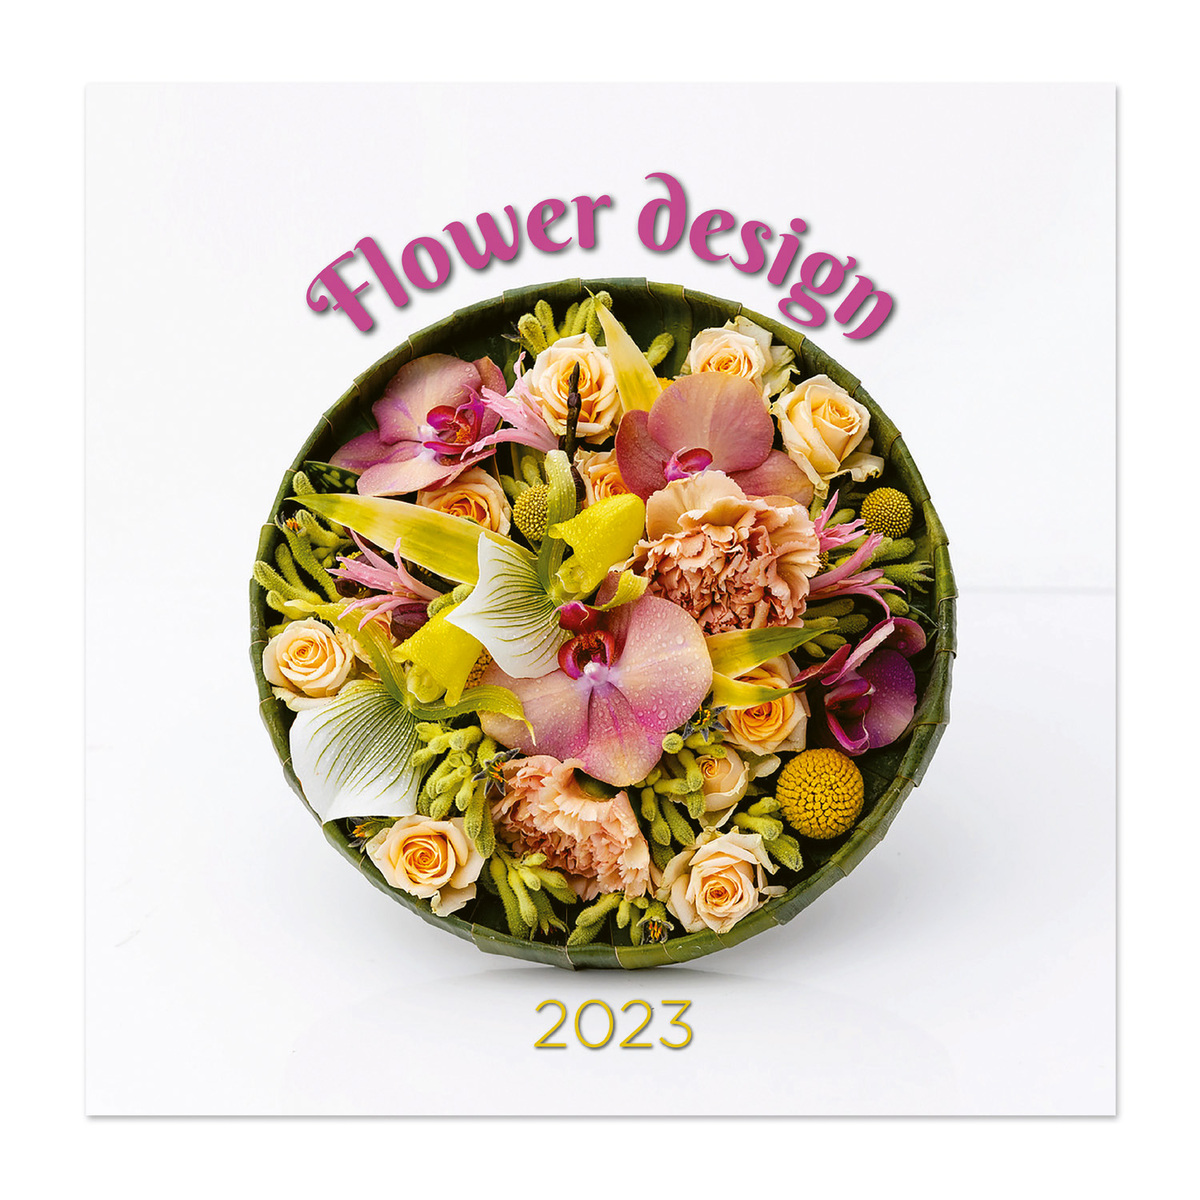 Flower design, képes lemeznaptár 2023